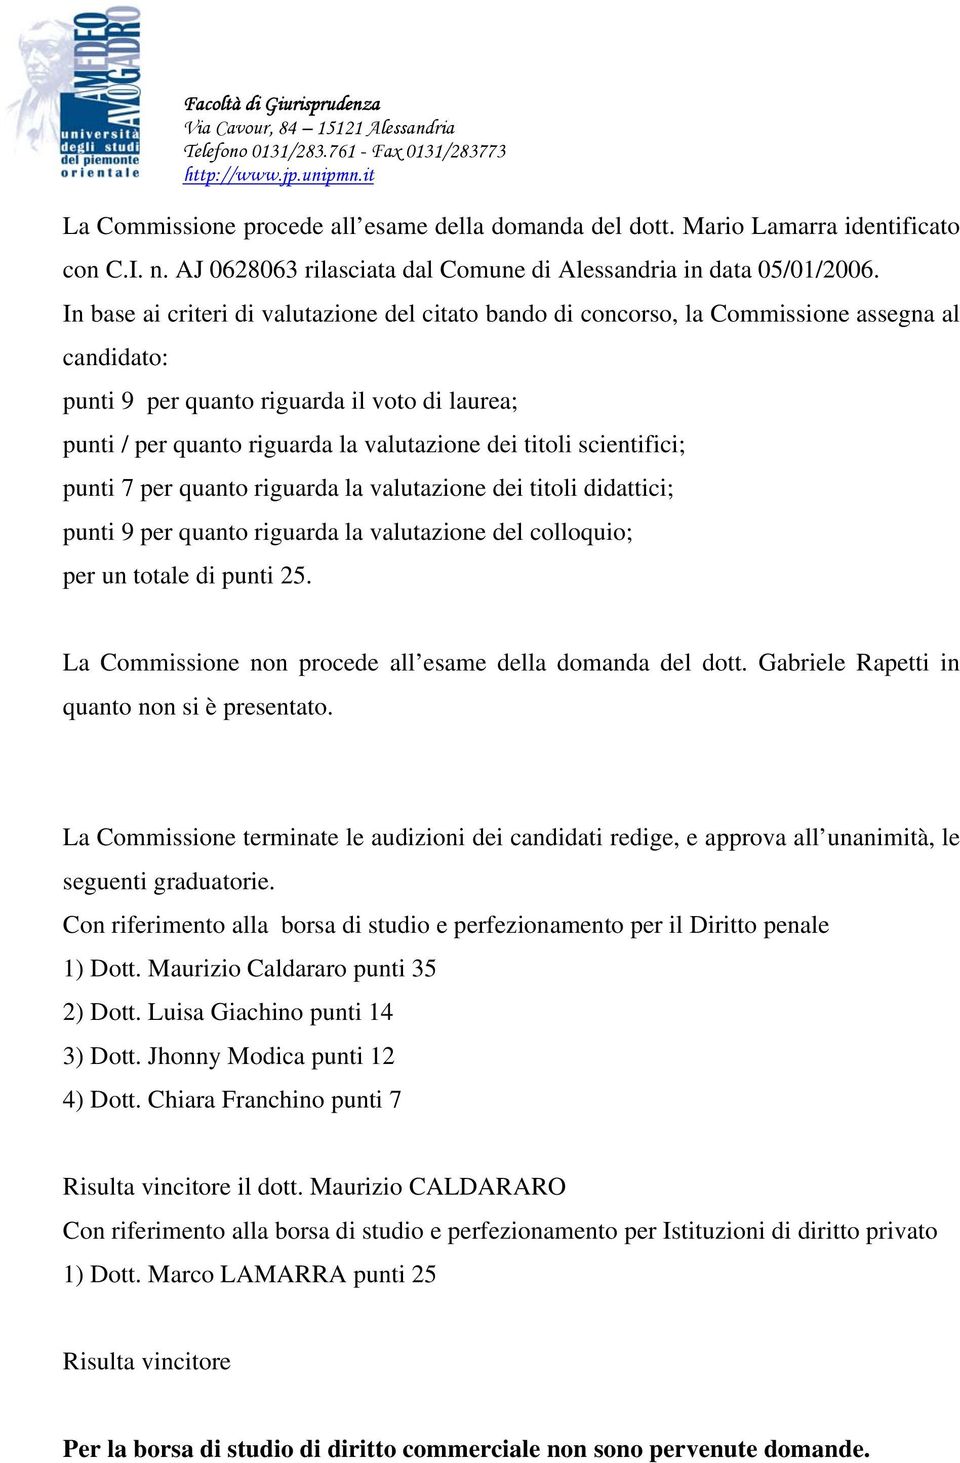 La Commissione non procede all esame della domanda del dott. Gabriele Rapetti in quanto non si è presentato.